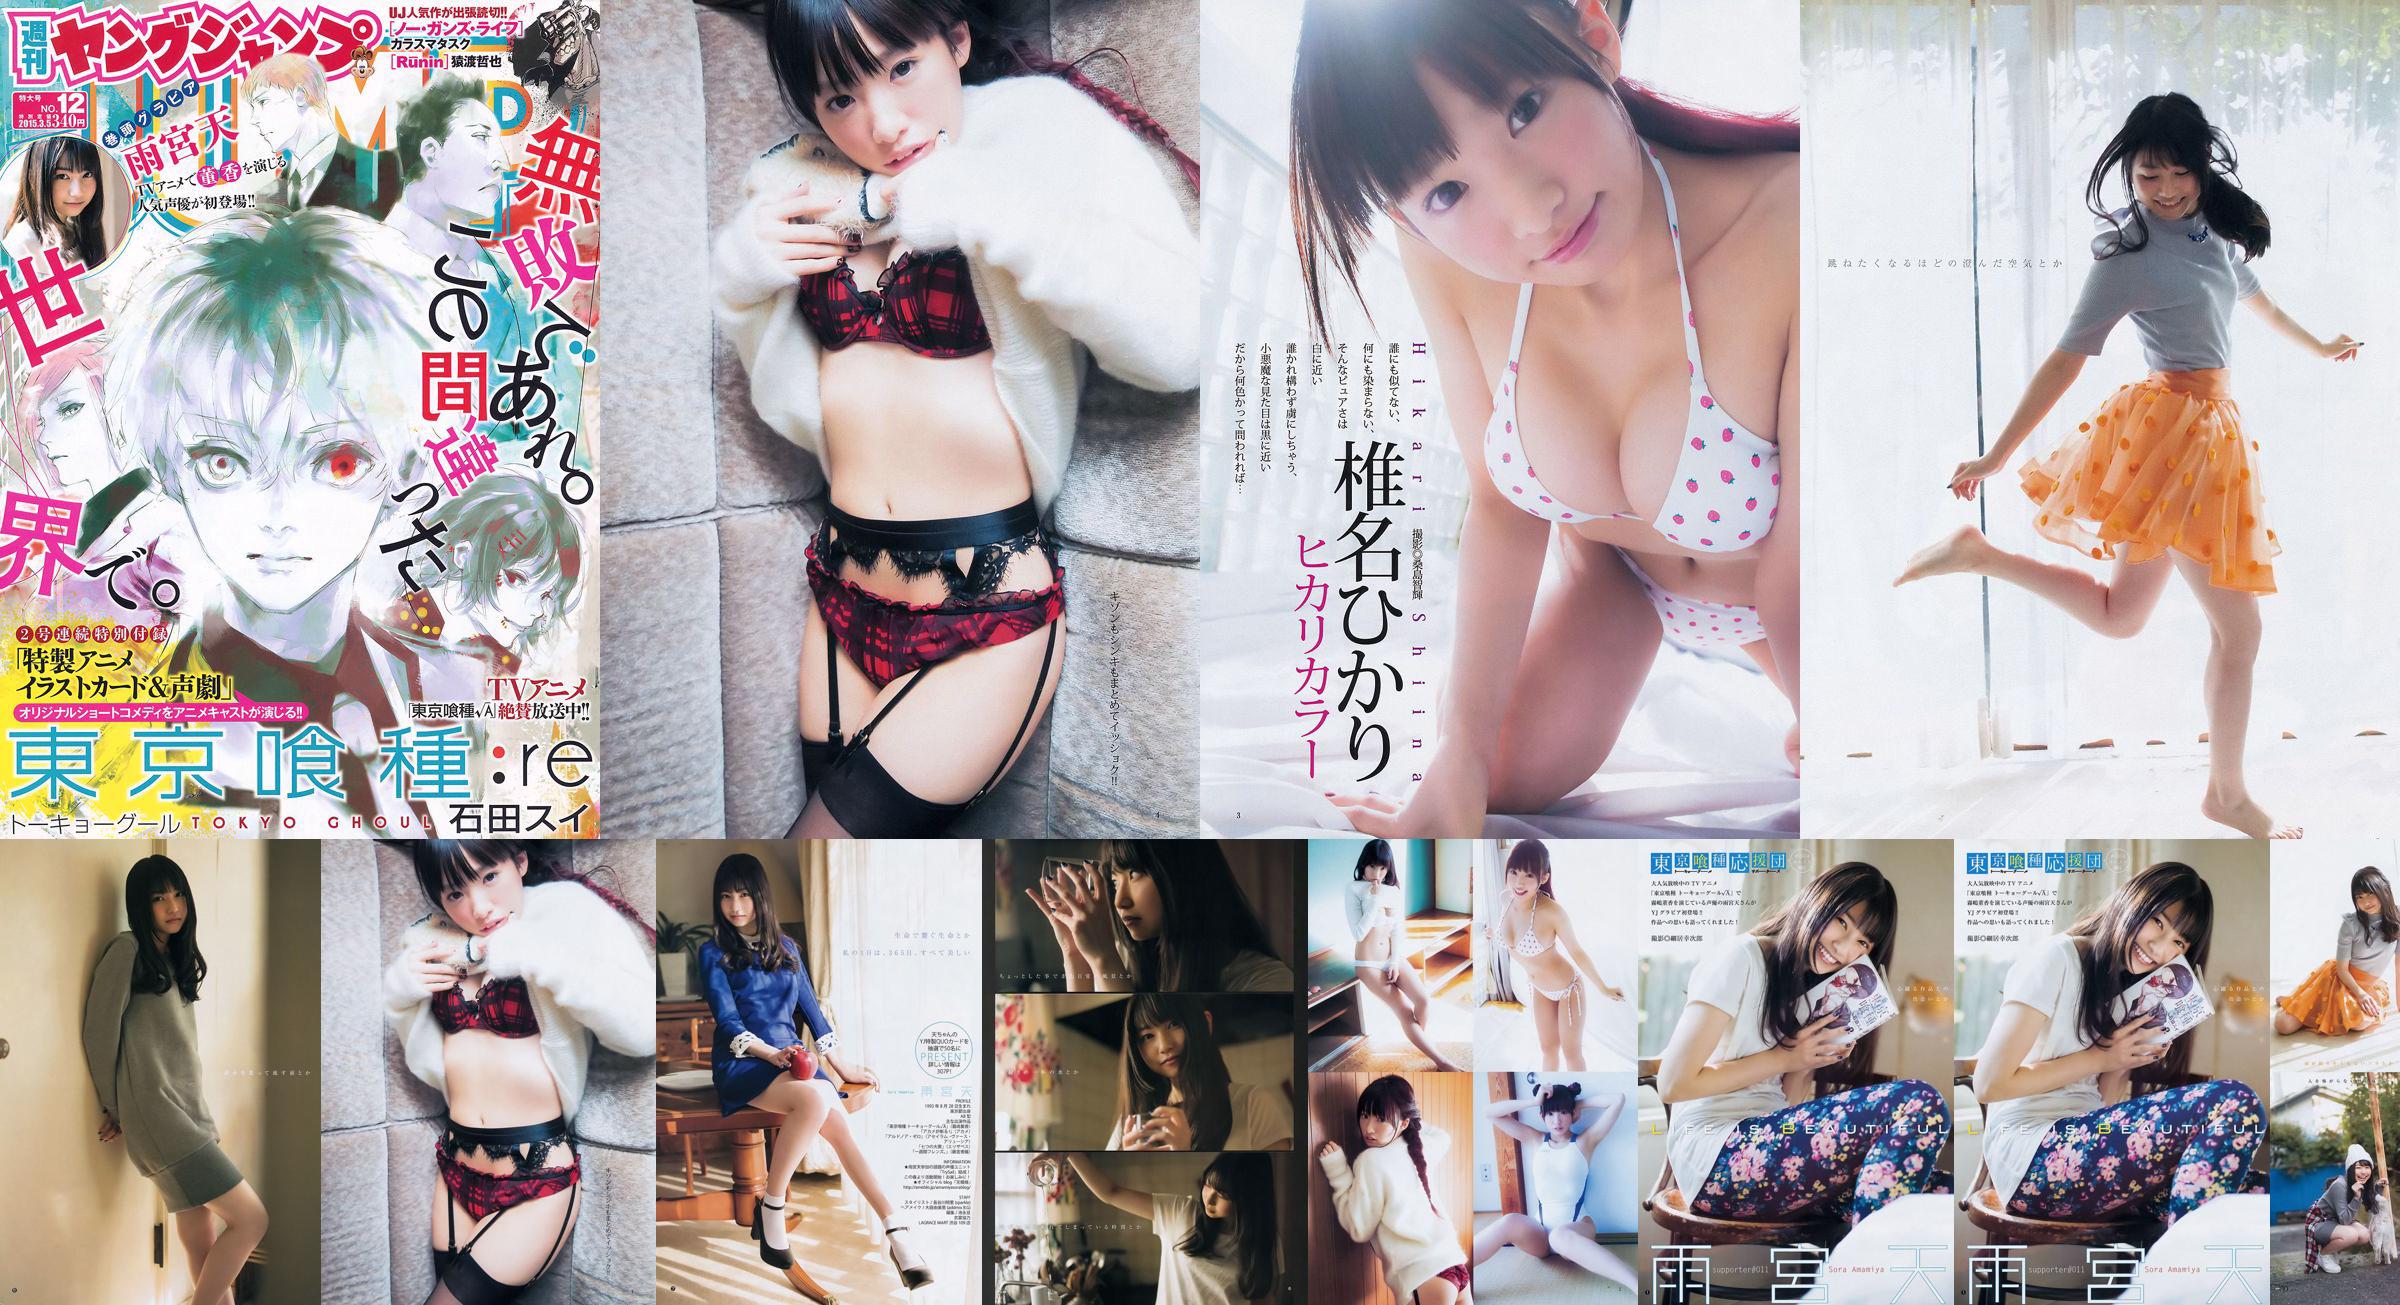 Amamiya Tian Shiina ひかり [Weekly Young Jump] 2015 No.12 Photo Magazine No.0dbb86 Pagina 28